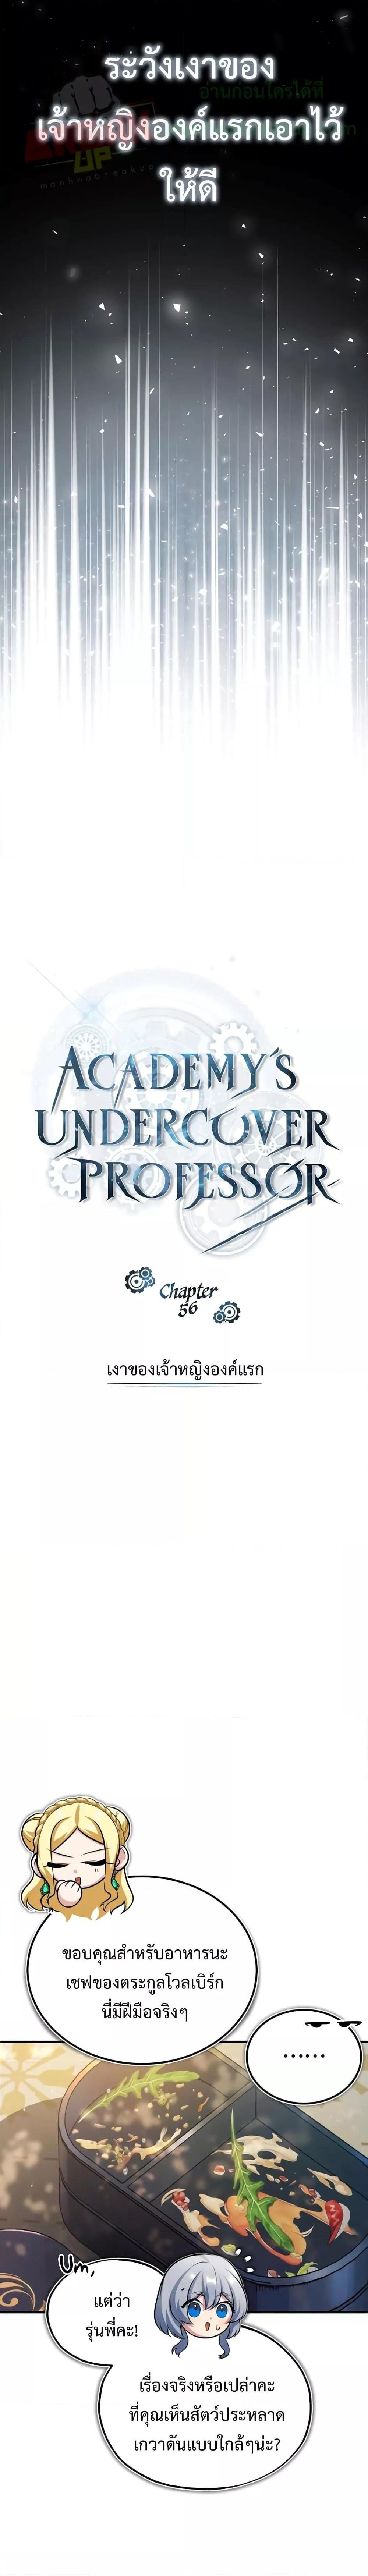 Academy’s Undercover Professor 56 23